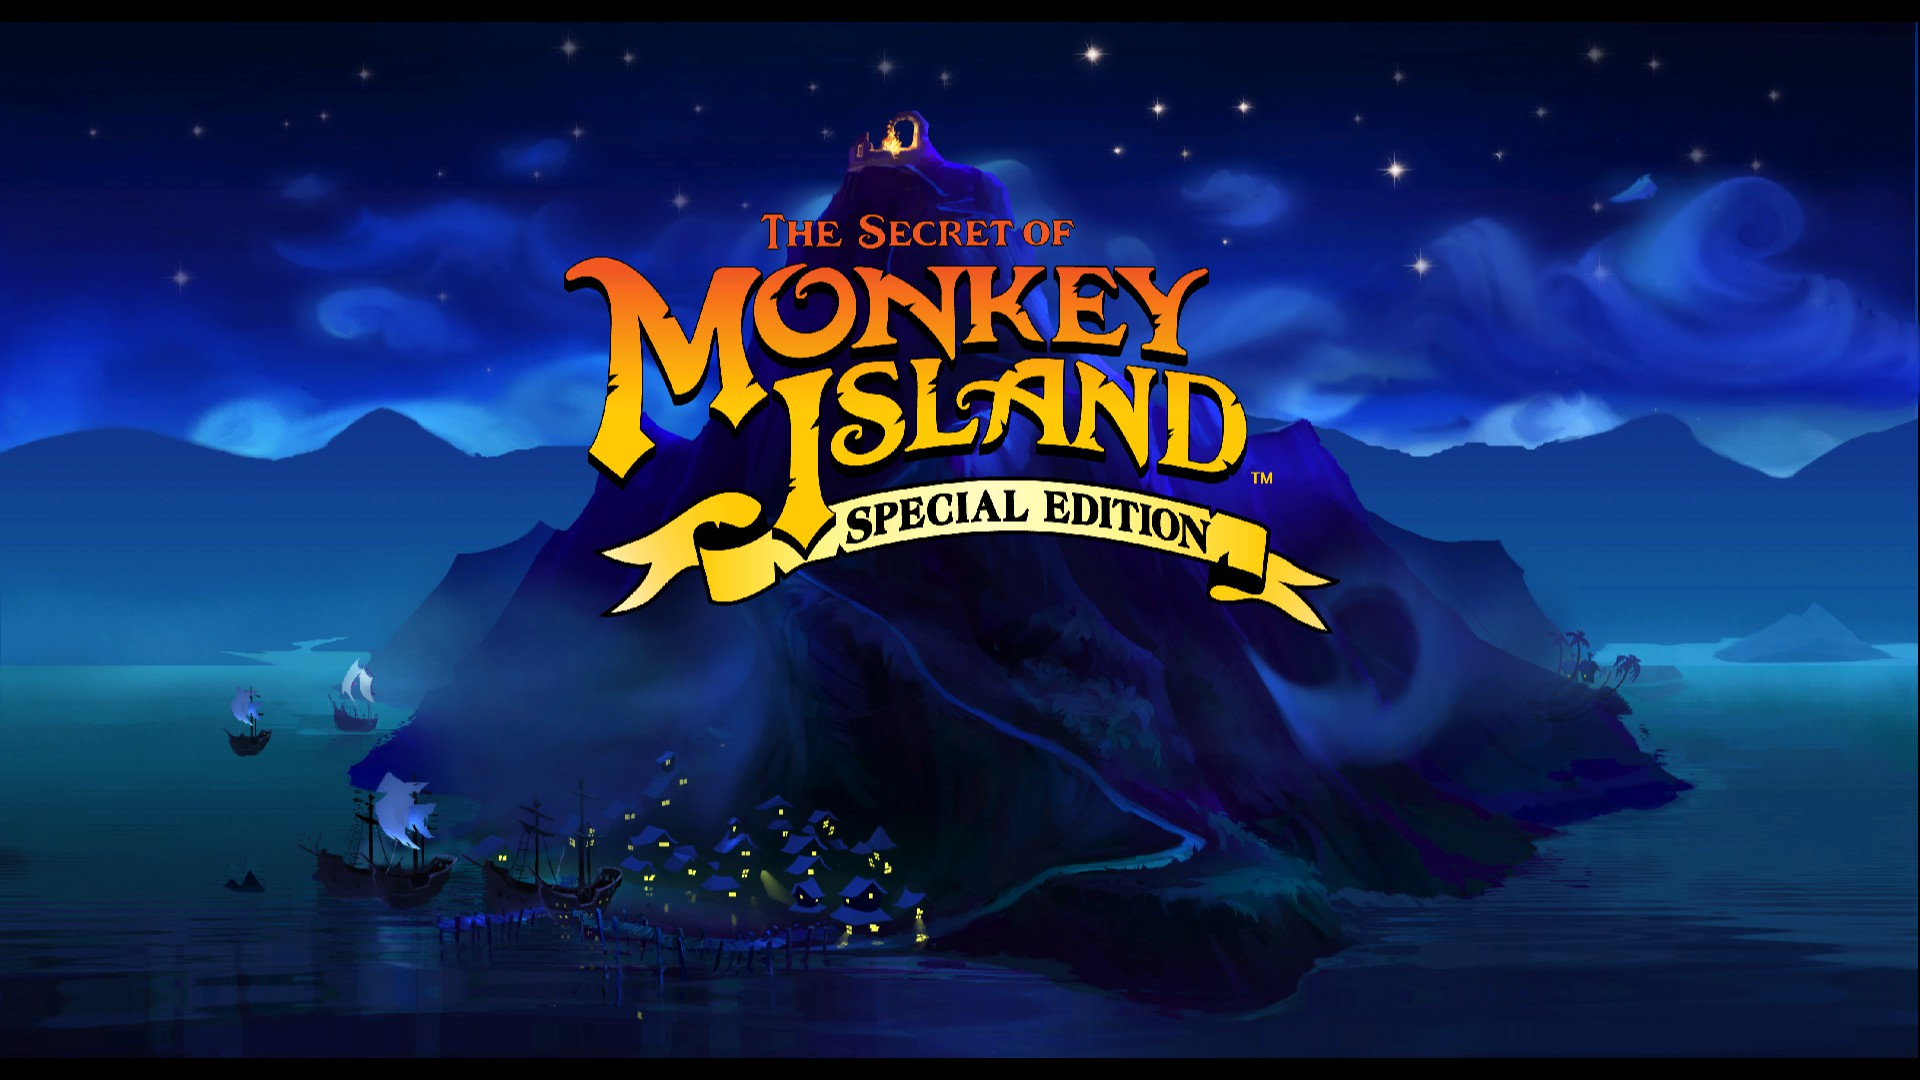 Das neue Monkey Island-Spiel kehrt 2022 nach Monkey Island zurück